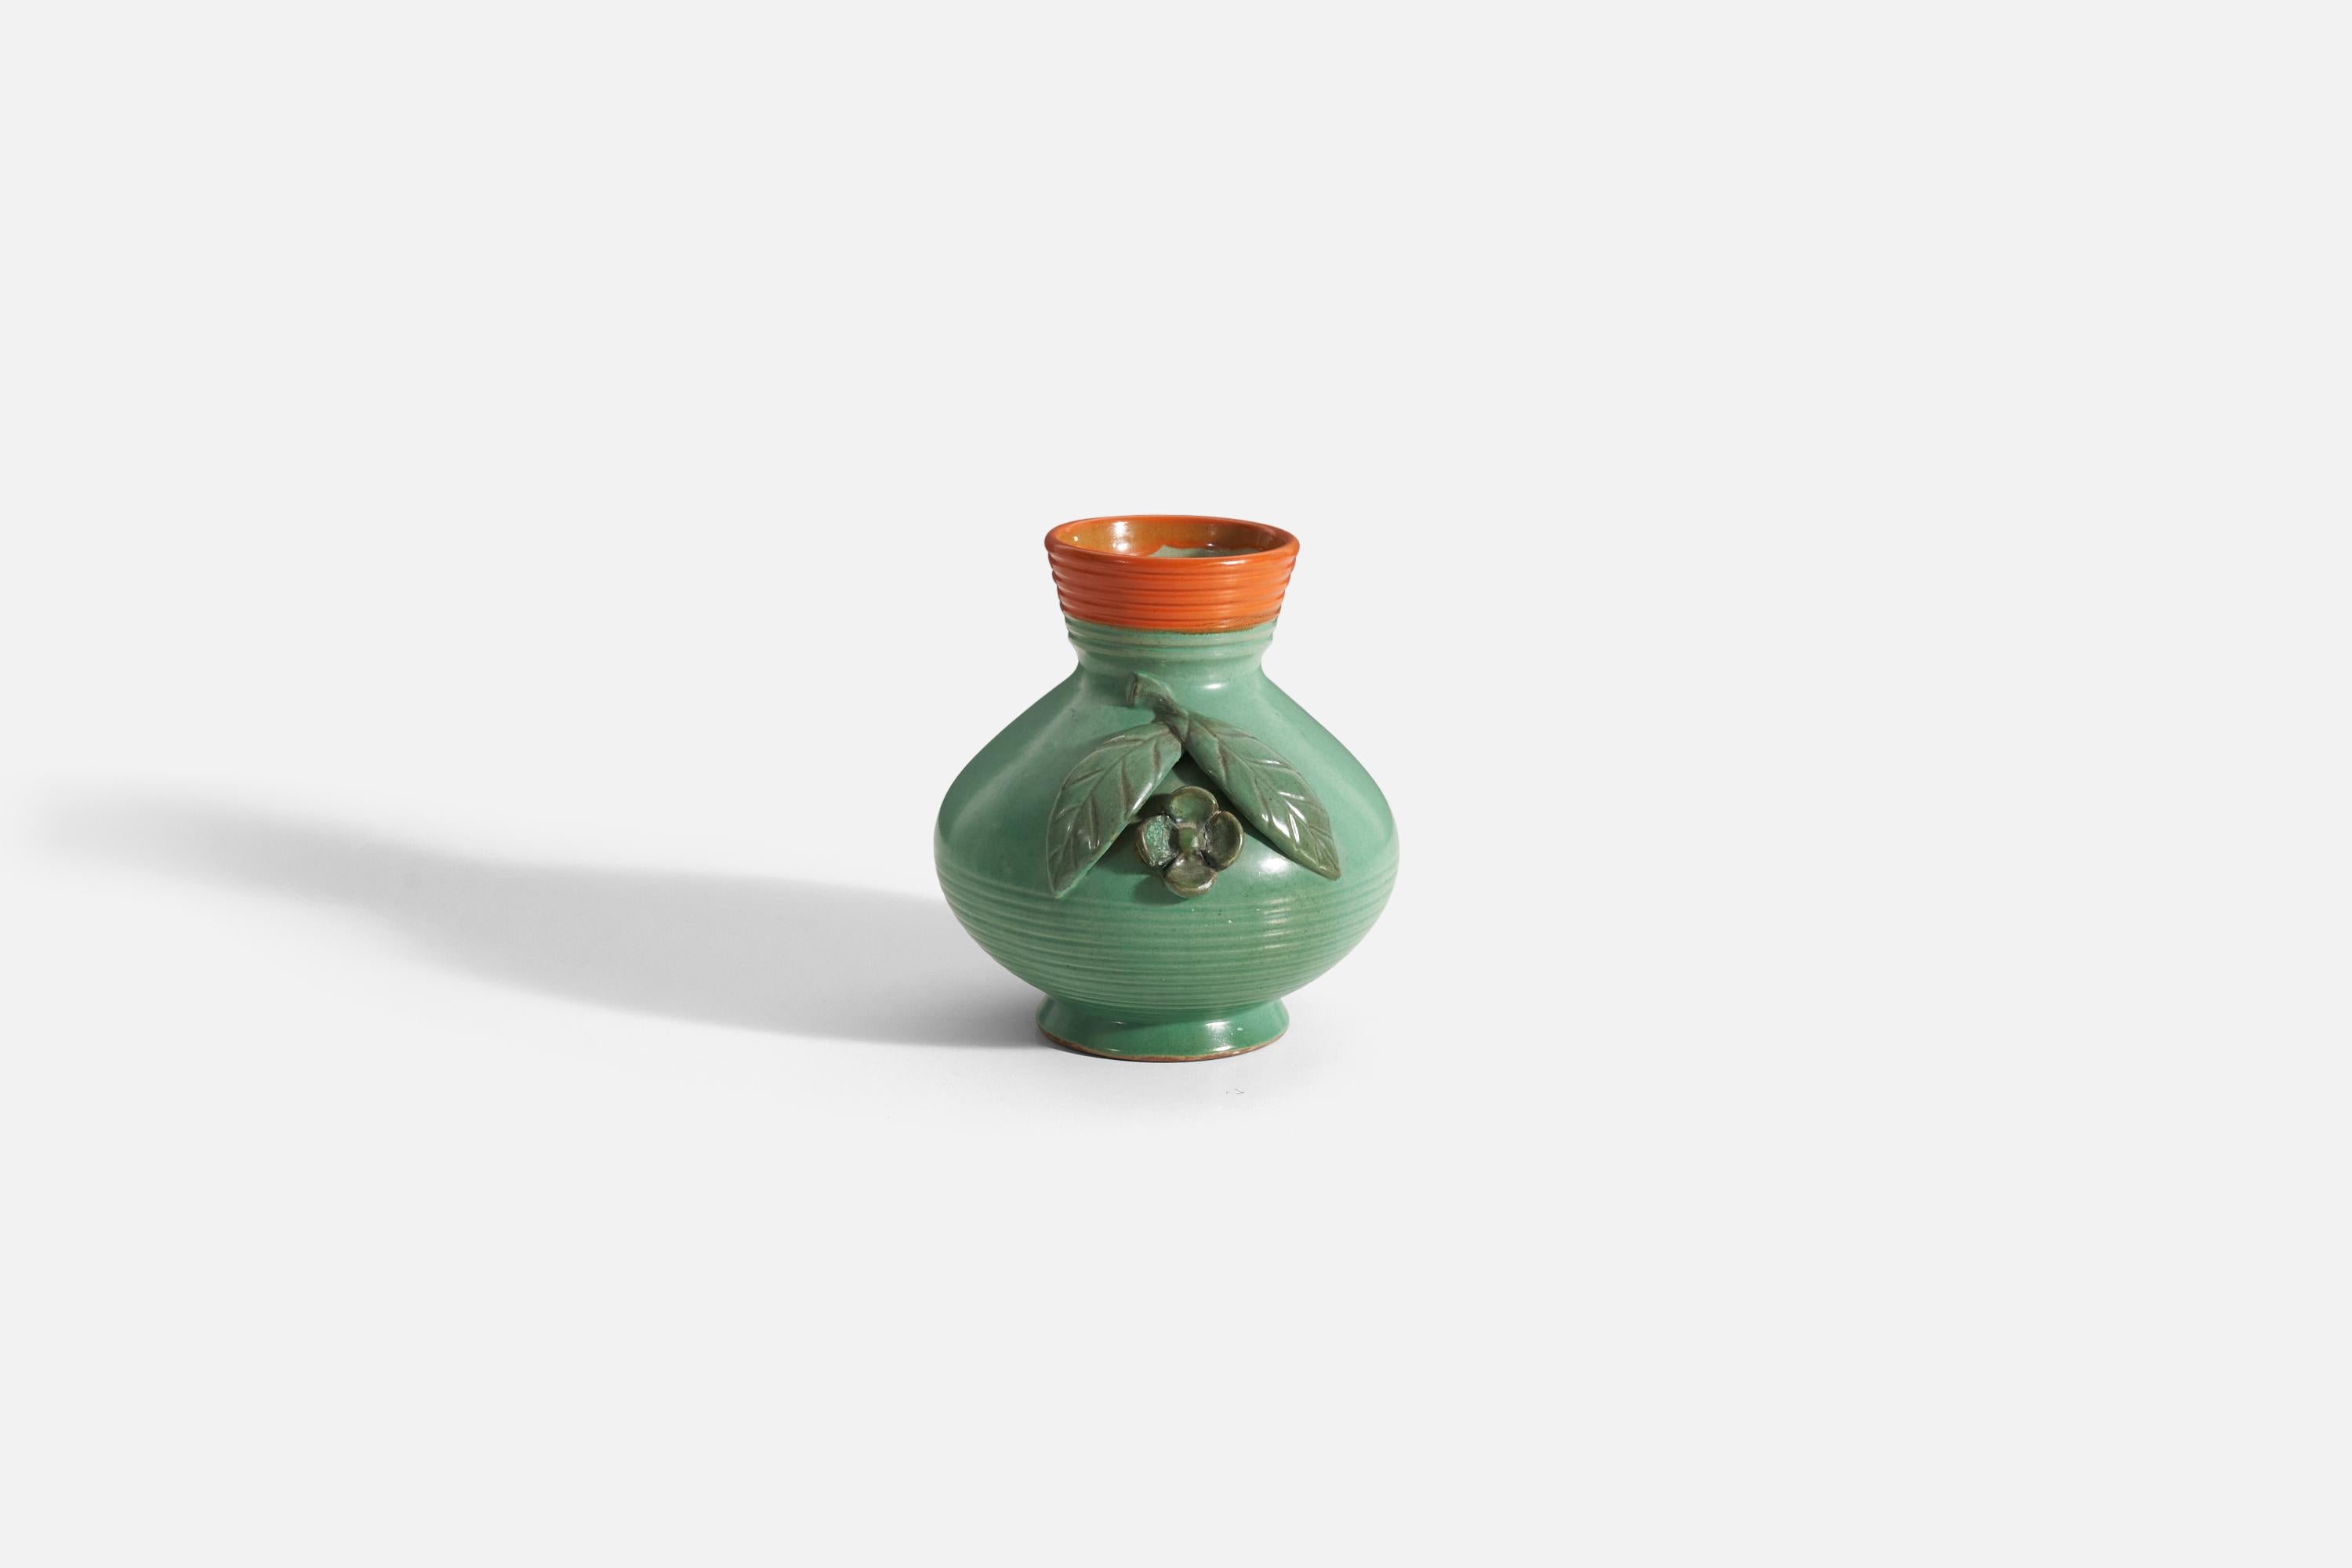 Grün und orange glasierte Steingutvase, entworfen und hergestellt von Töreboda Keramik, Schweden, um 1940.
 